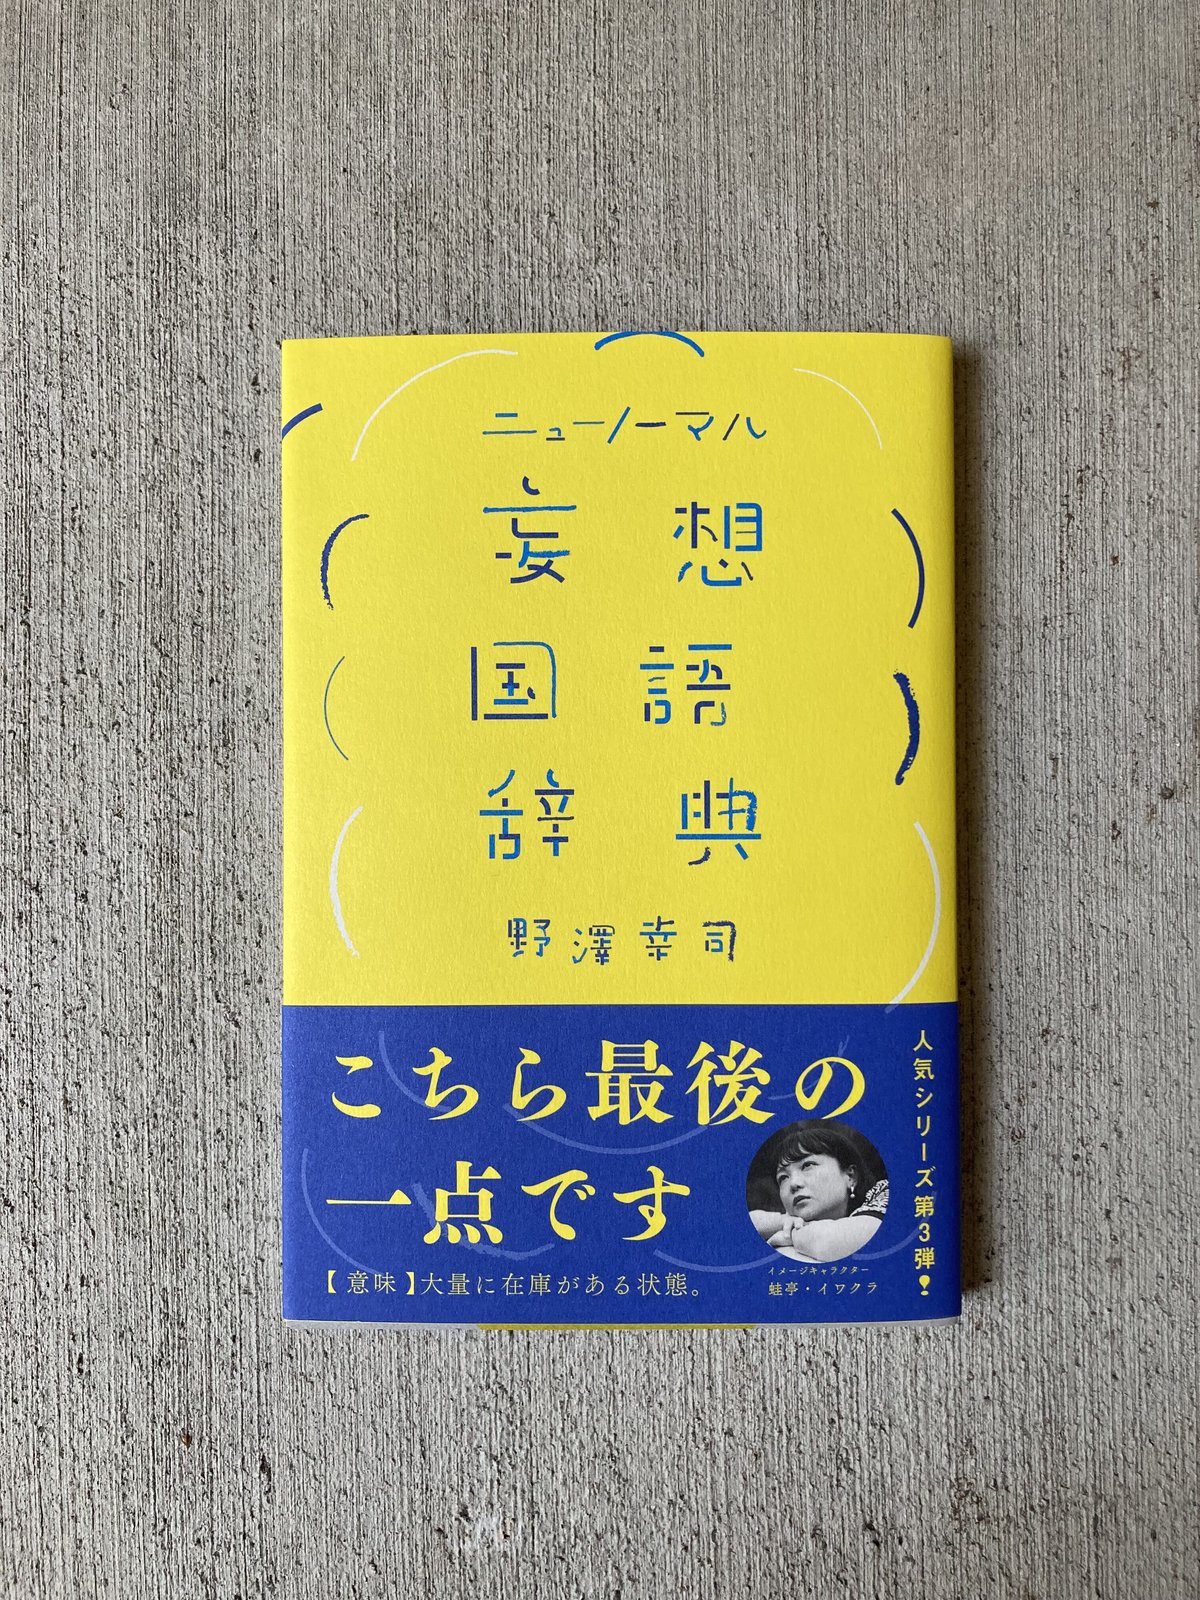 妄想国語辞典 2 - アート